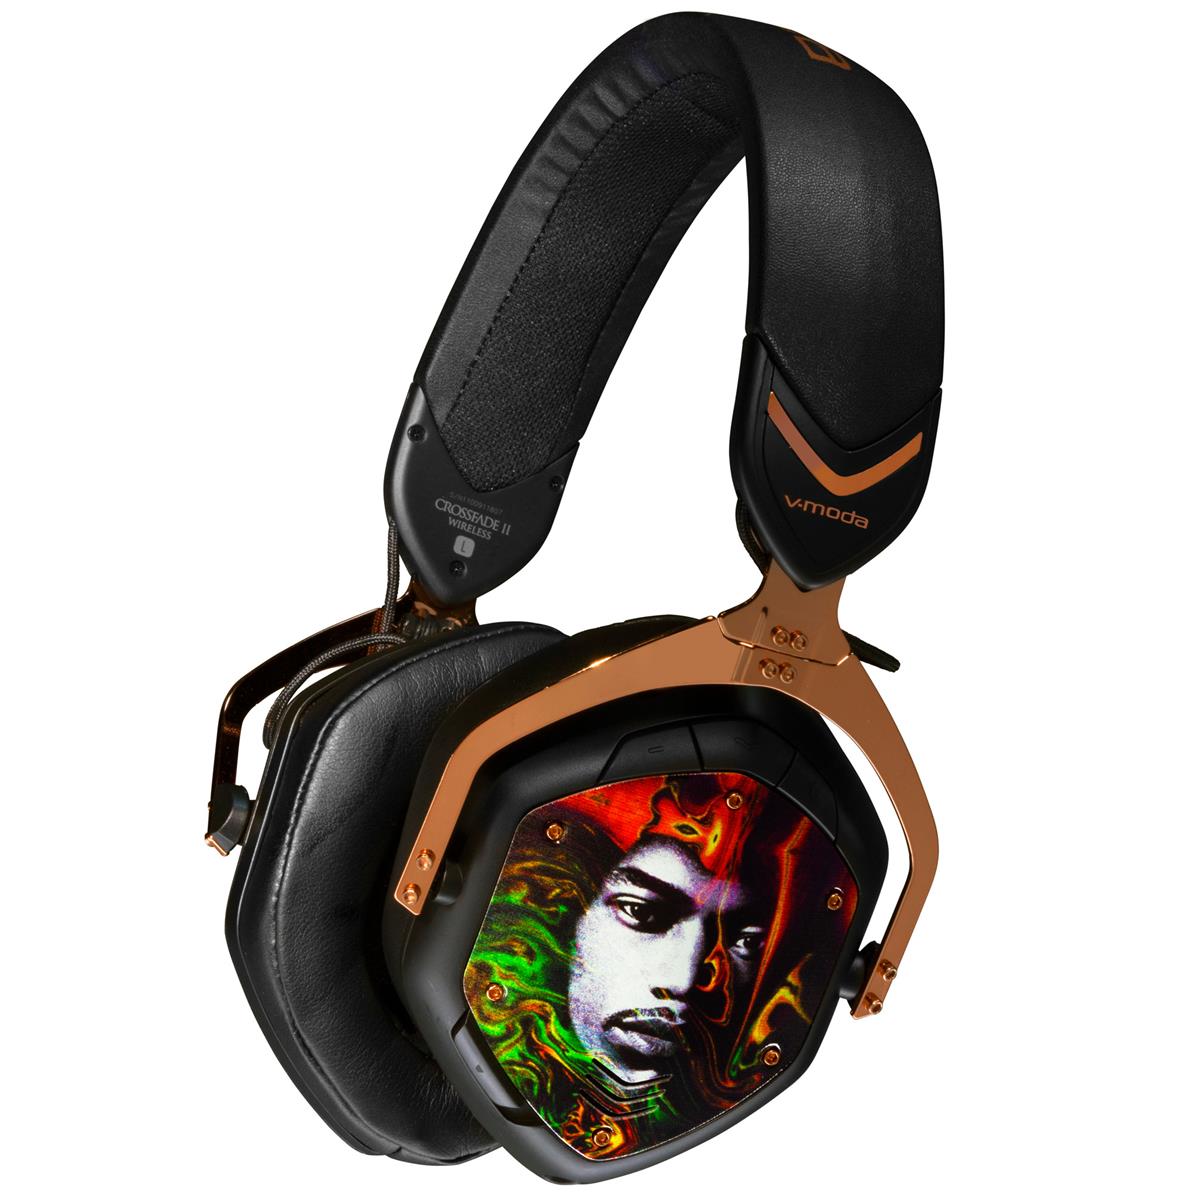 Image of V-MODA Crossfade 2 Wireless Over-Ear Headphones with Jimi Hendrix Image